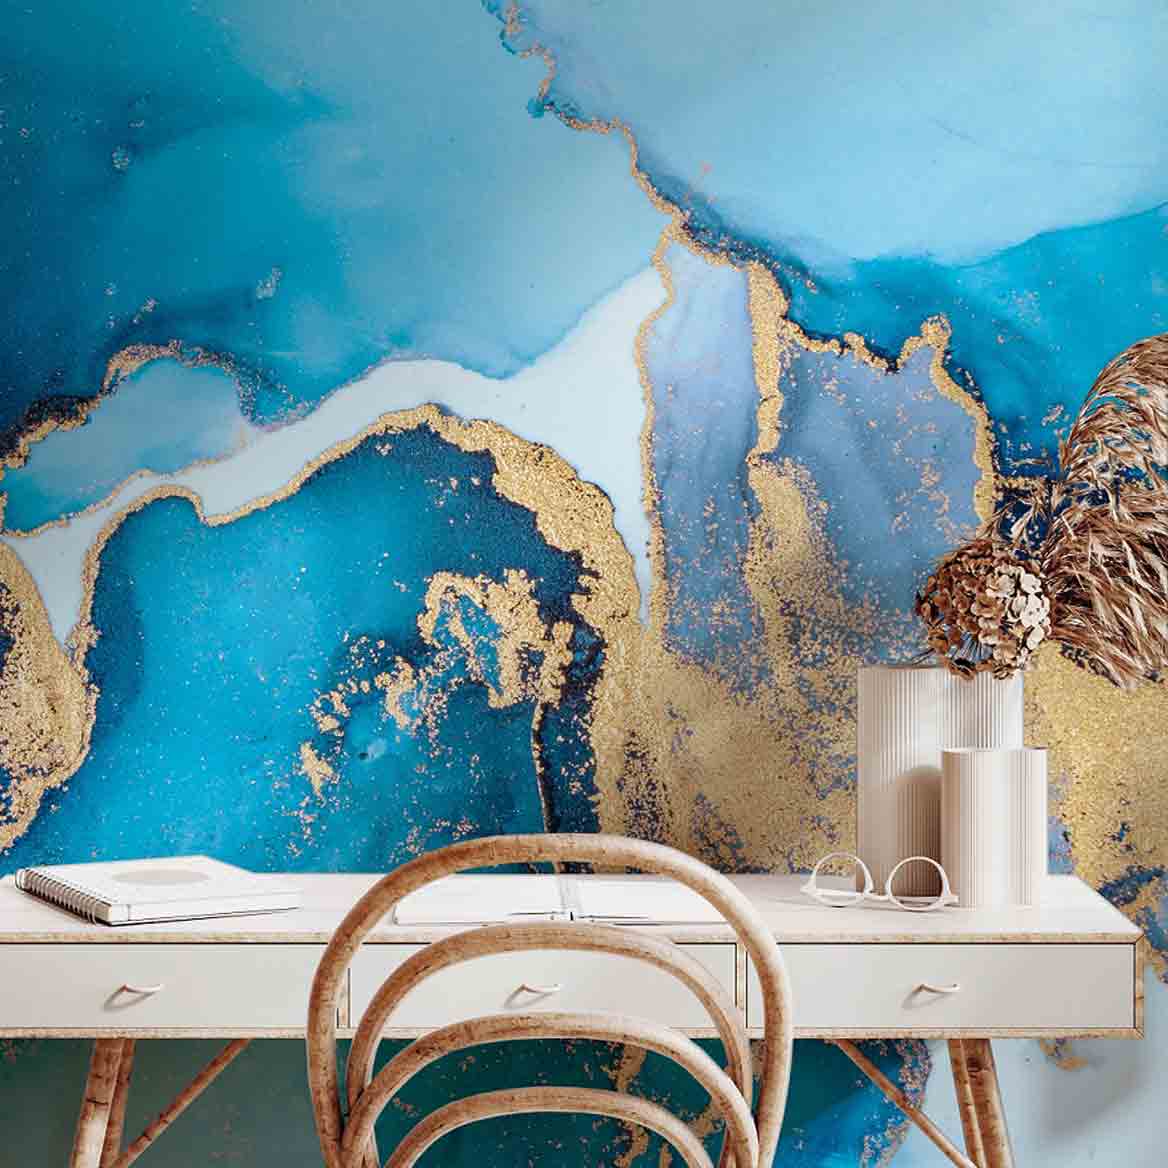 papier peint adhesif marbre bleu beige doree abstraction sur mesure personnalisable tendance tapisserie murale chambre salon bureau cuisine décoration oliprint